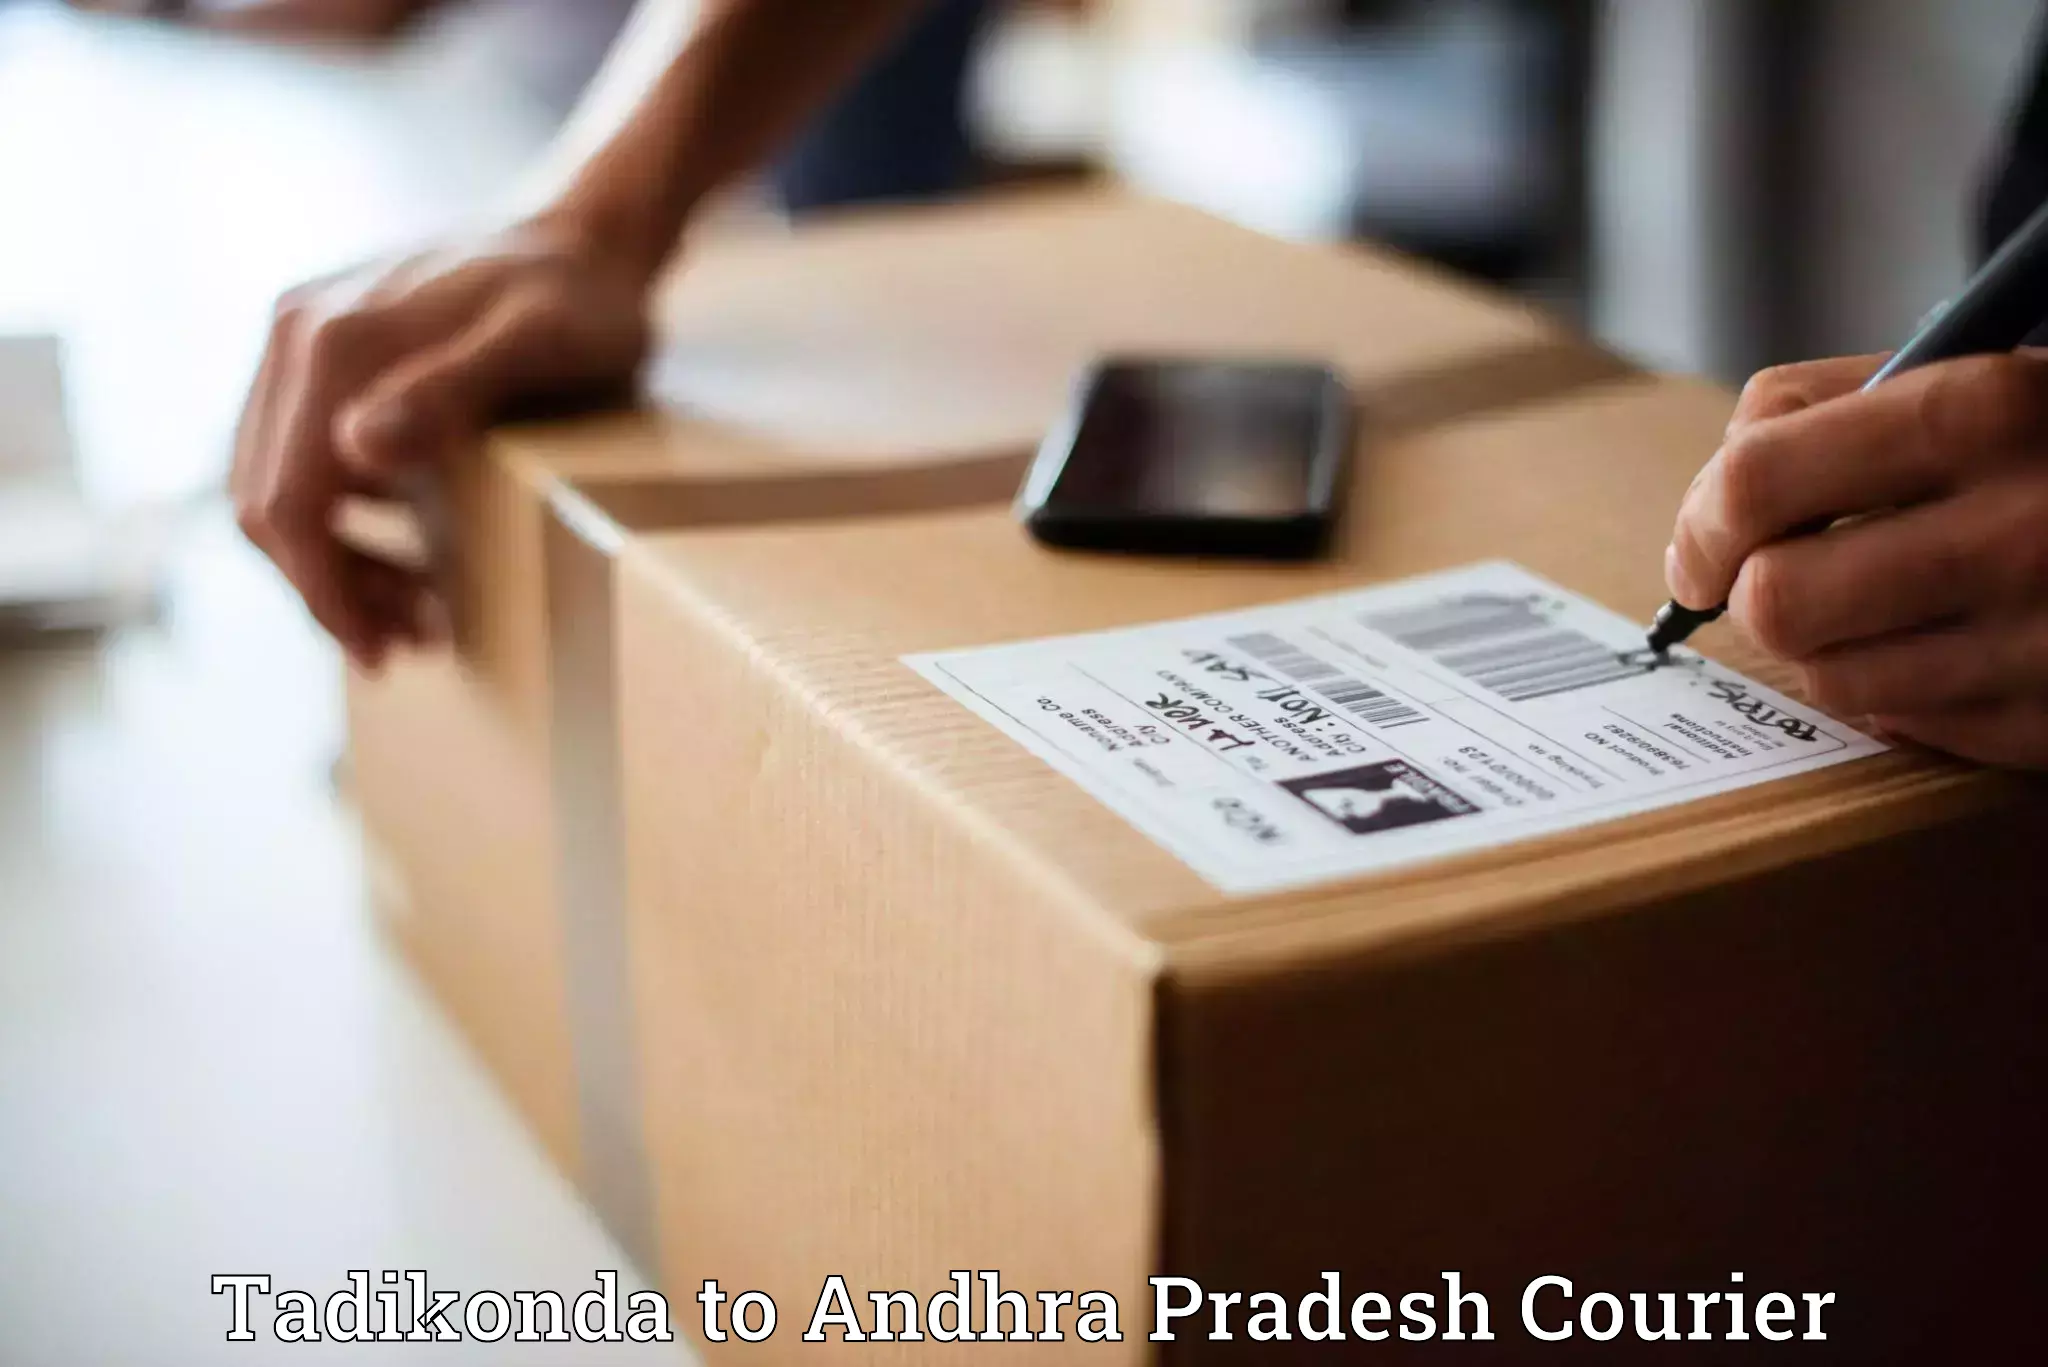 Courier app Tadikonda to Andhra Pradesh